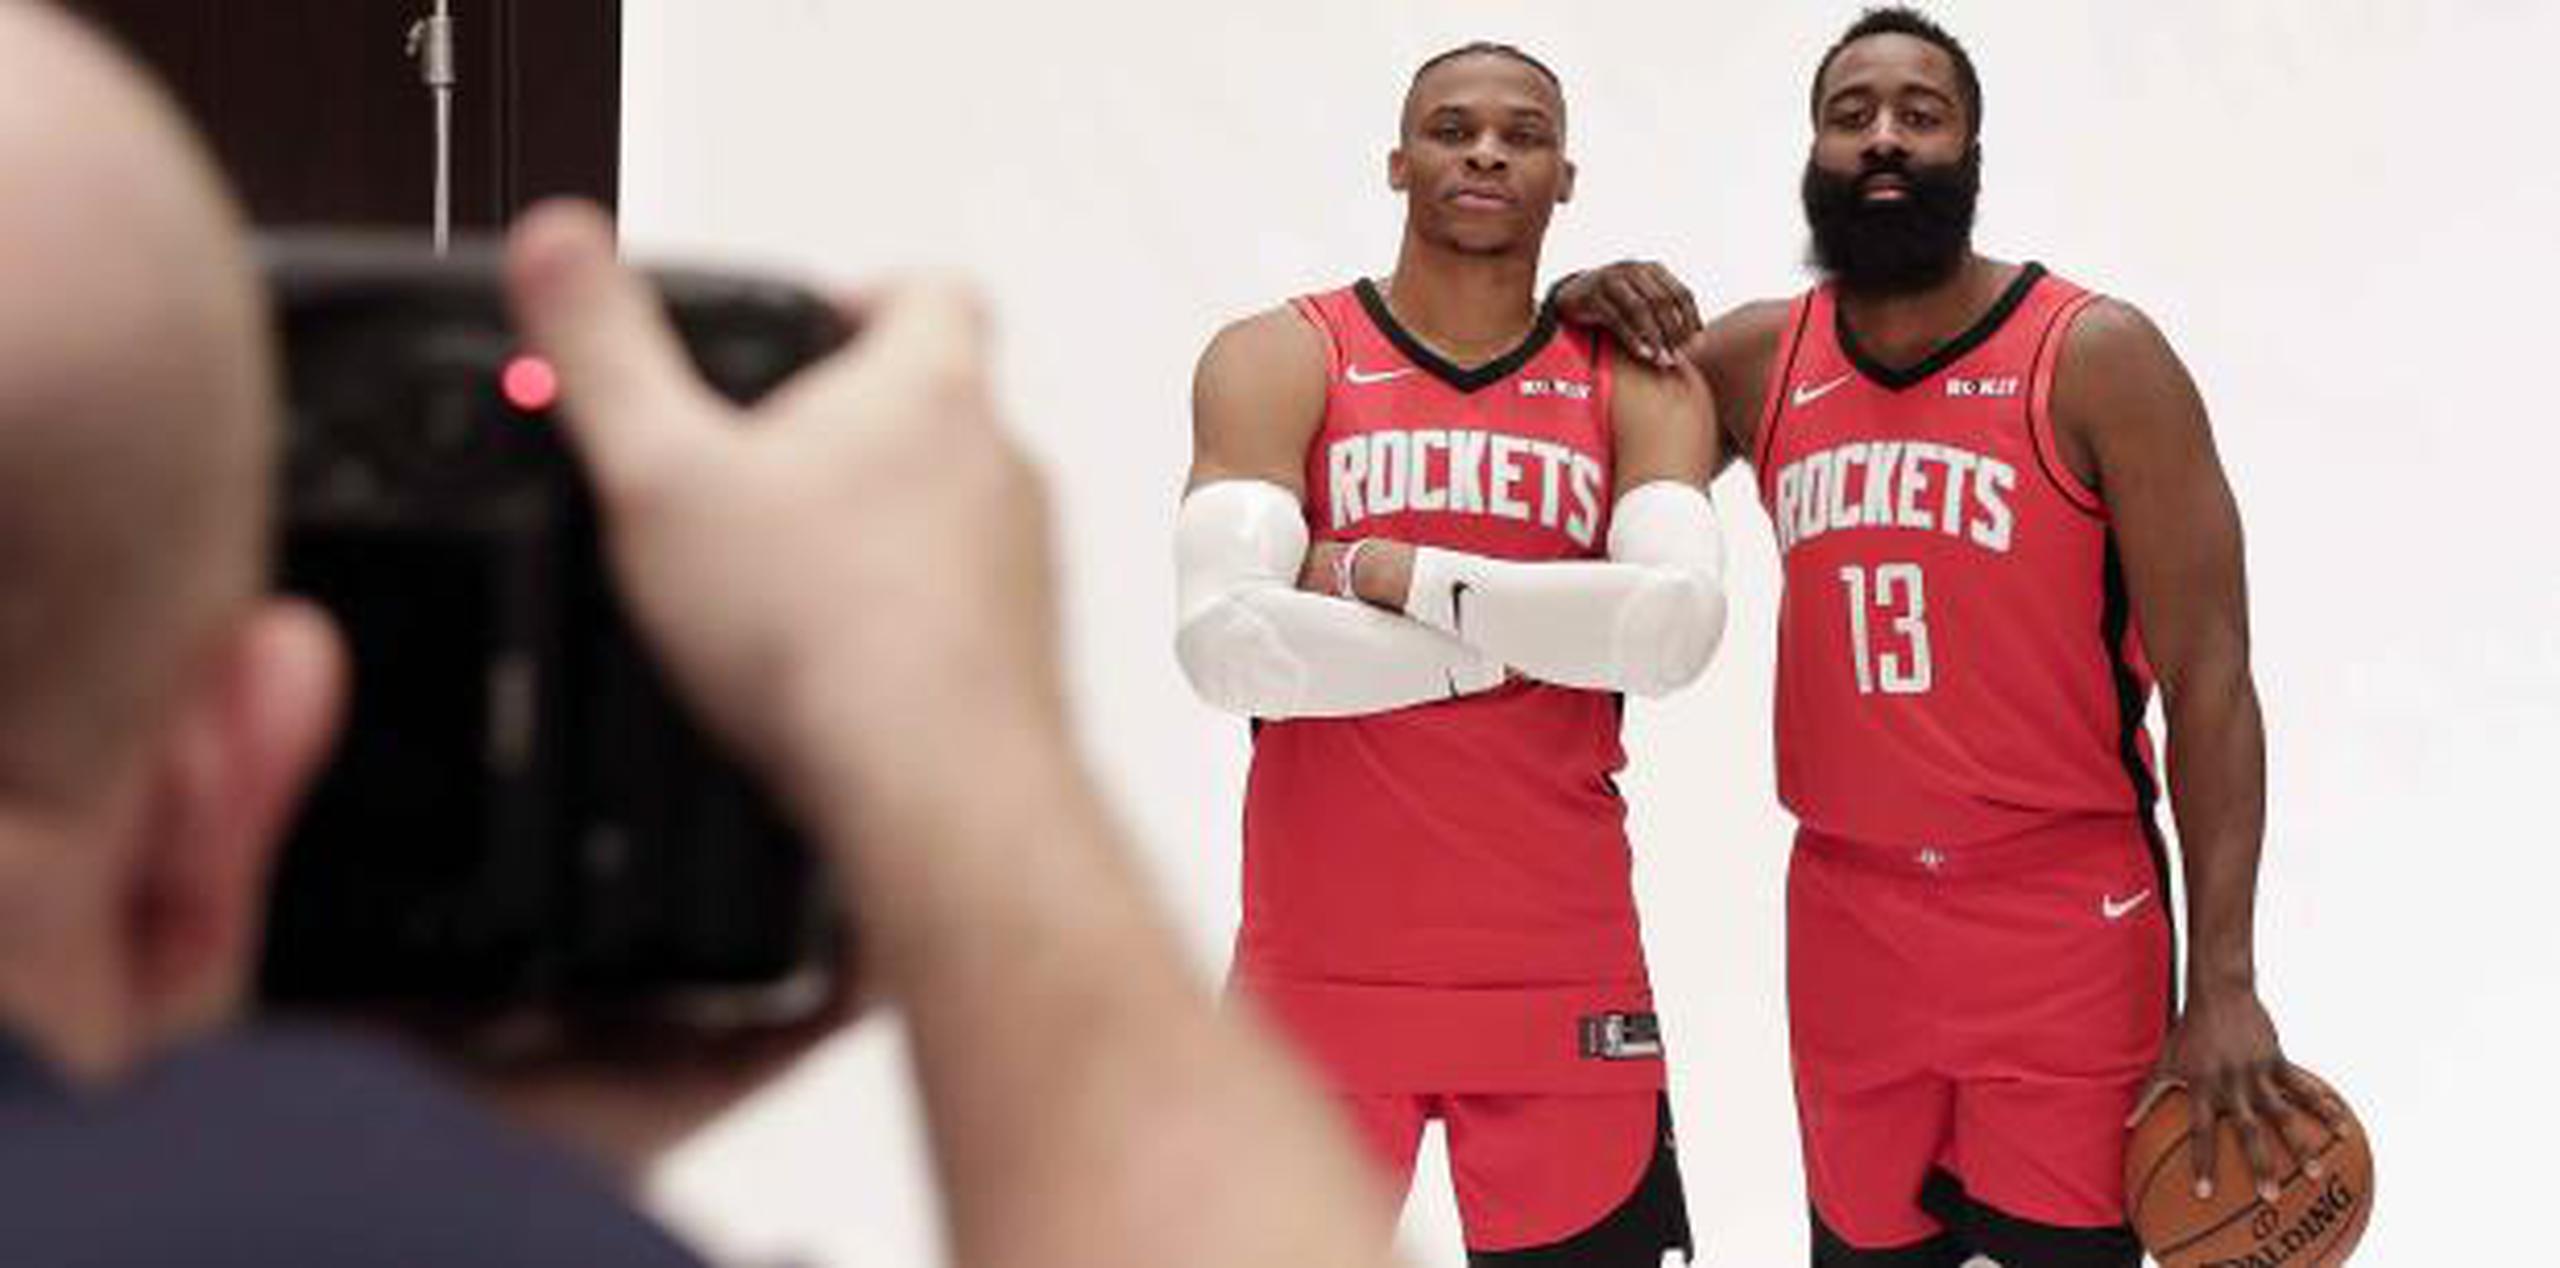 Russell Westbrook debutará esta temporada con los Rockets, donde se unirá a James Harden (13). Ambos jugaron juntos anteriormente con el Thunder. (AP)